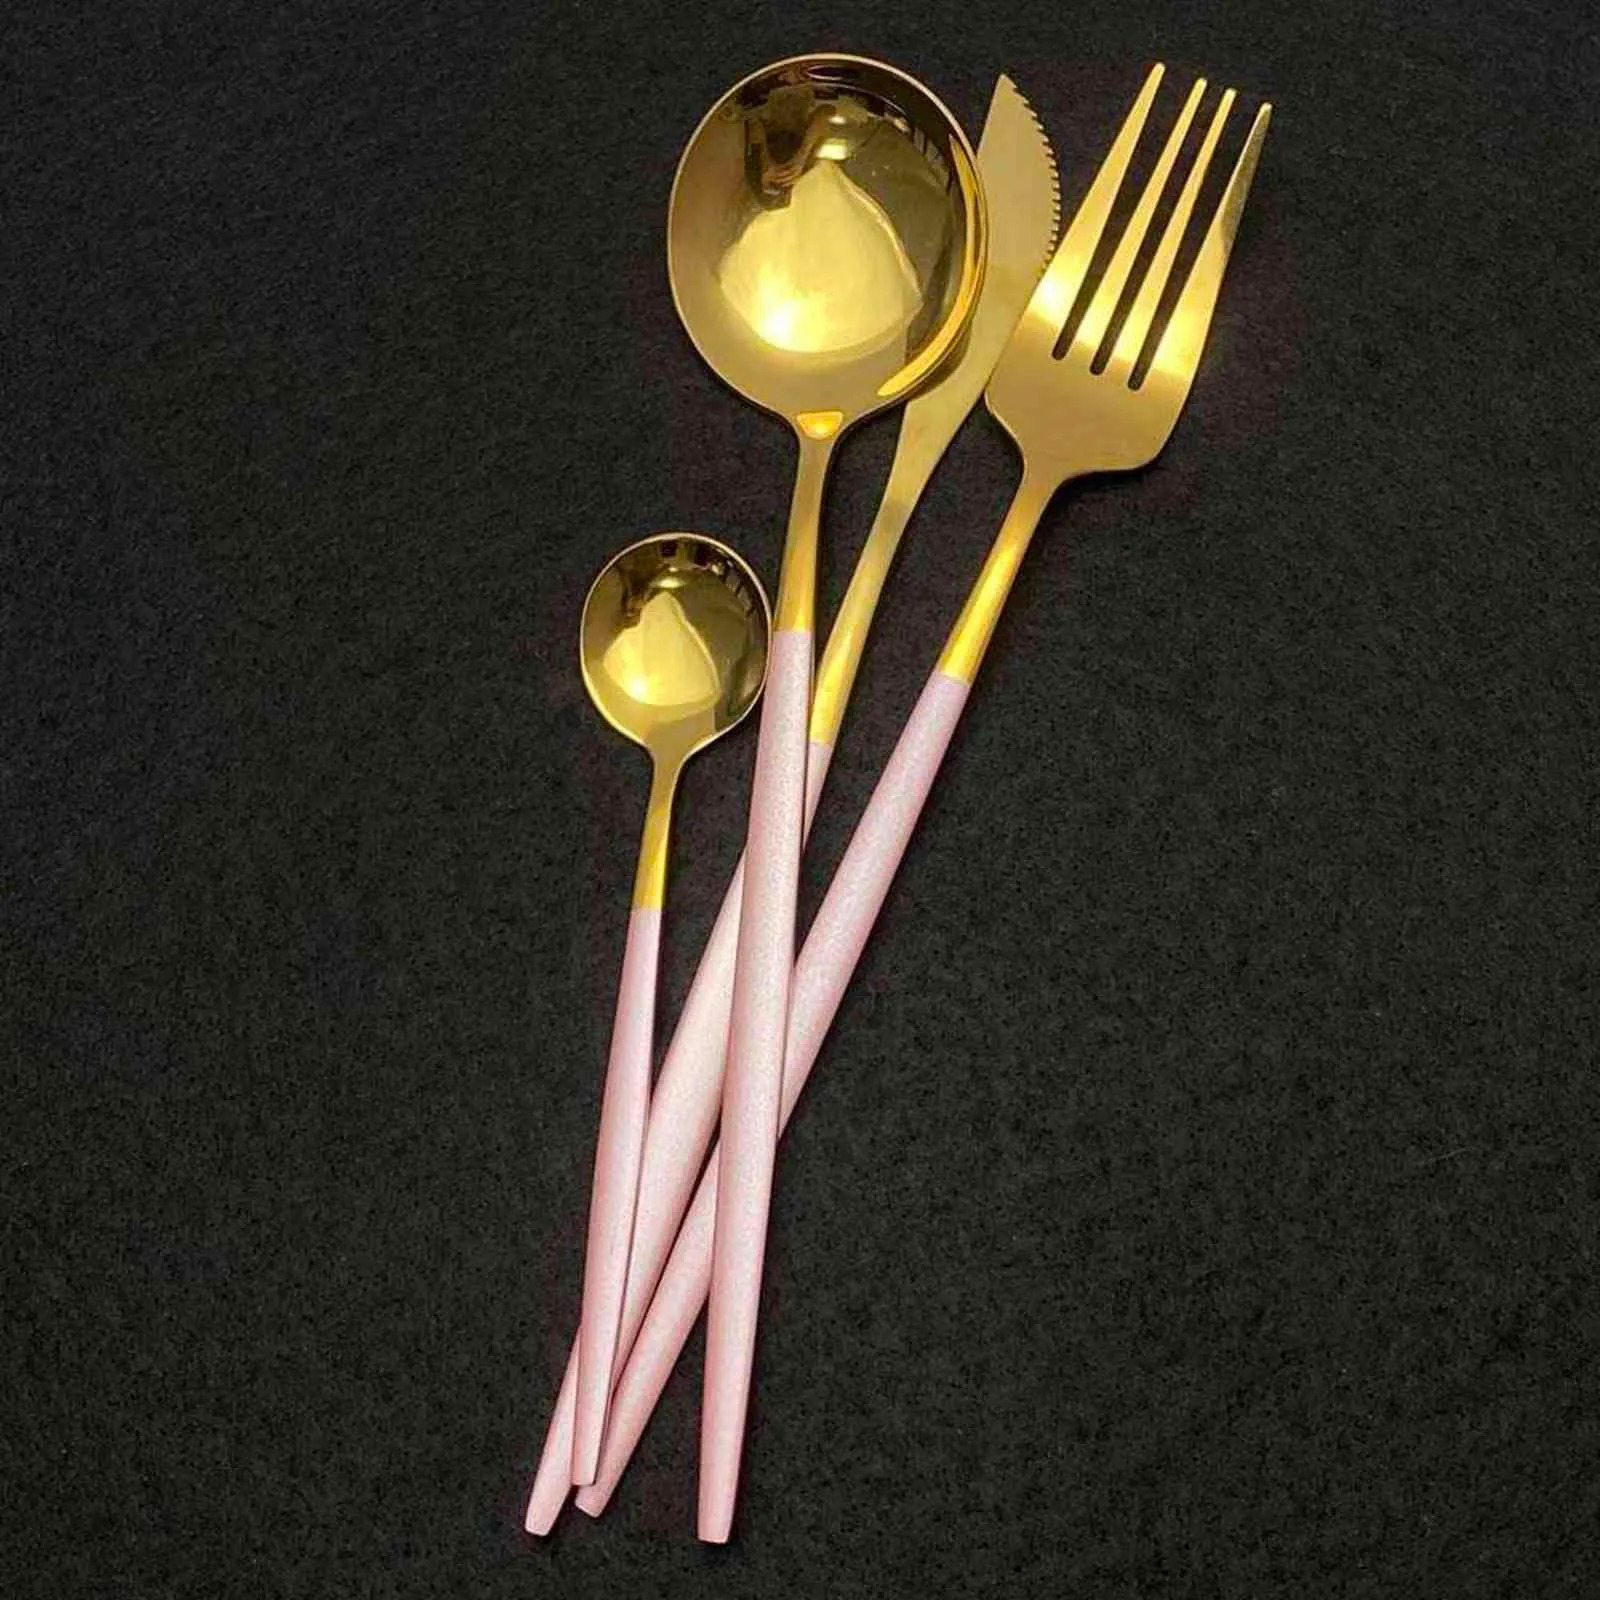 Red Gold Dinnerware Cutlery Set Stainless Steel Food Flatware Home Steak Knife Fork Coffee Spoon Upscale Tableware Set 211112